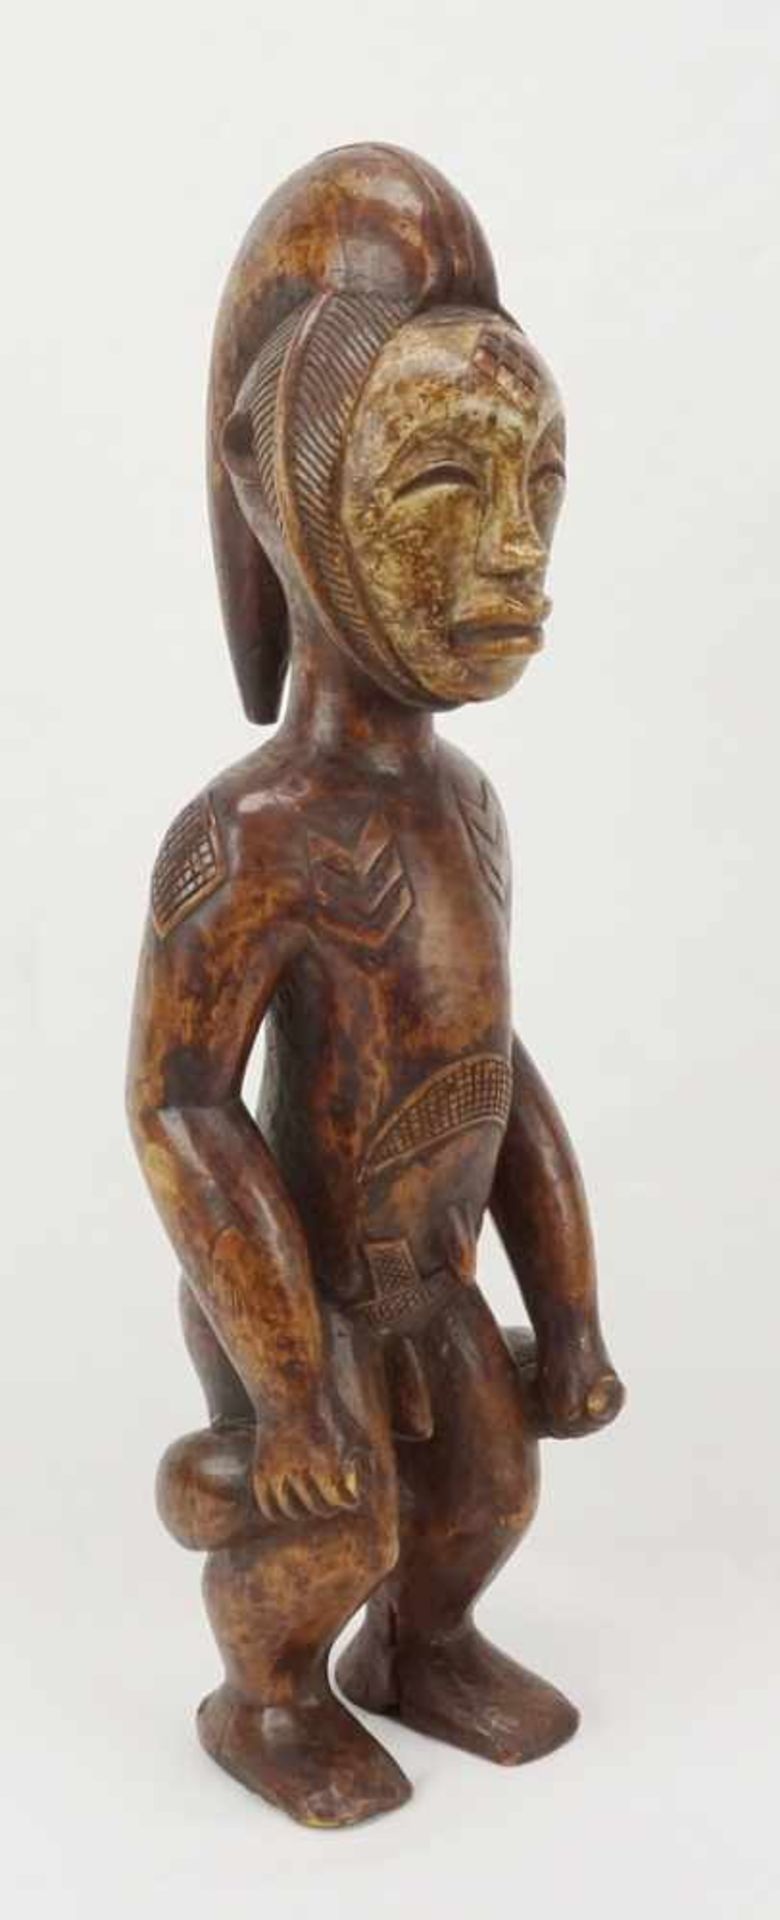 Stehende Ahnenfigur der Kwele, Gabun, DR Kongo, 20. Jh.alt patiniertes Holz, angewinkelte Arme und